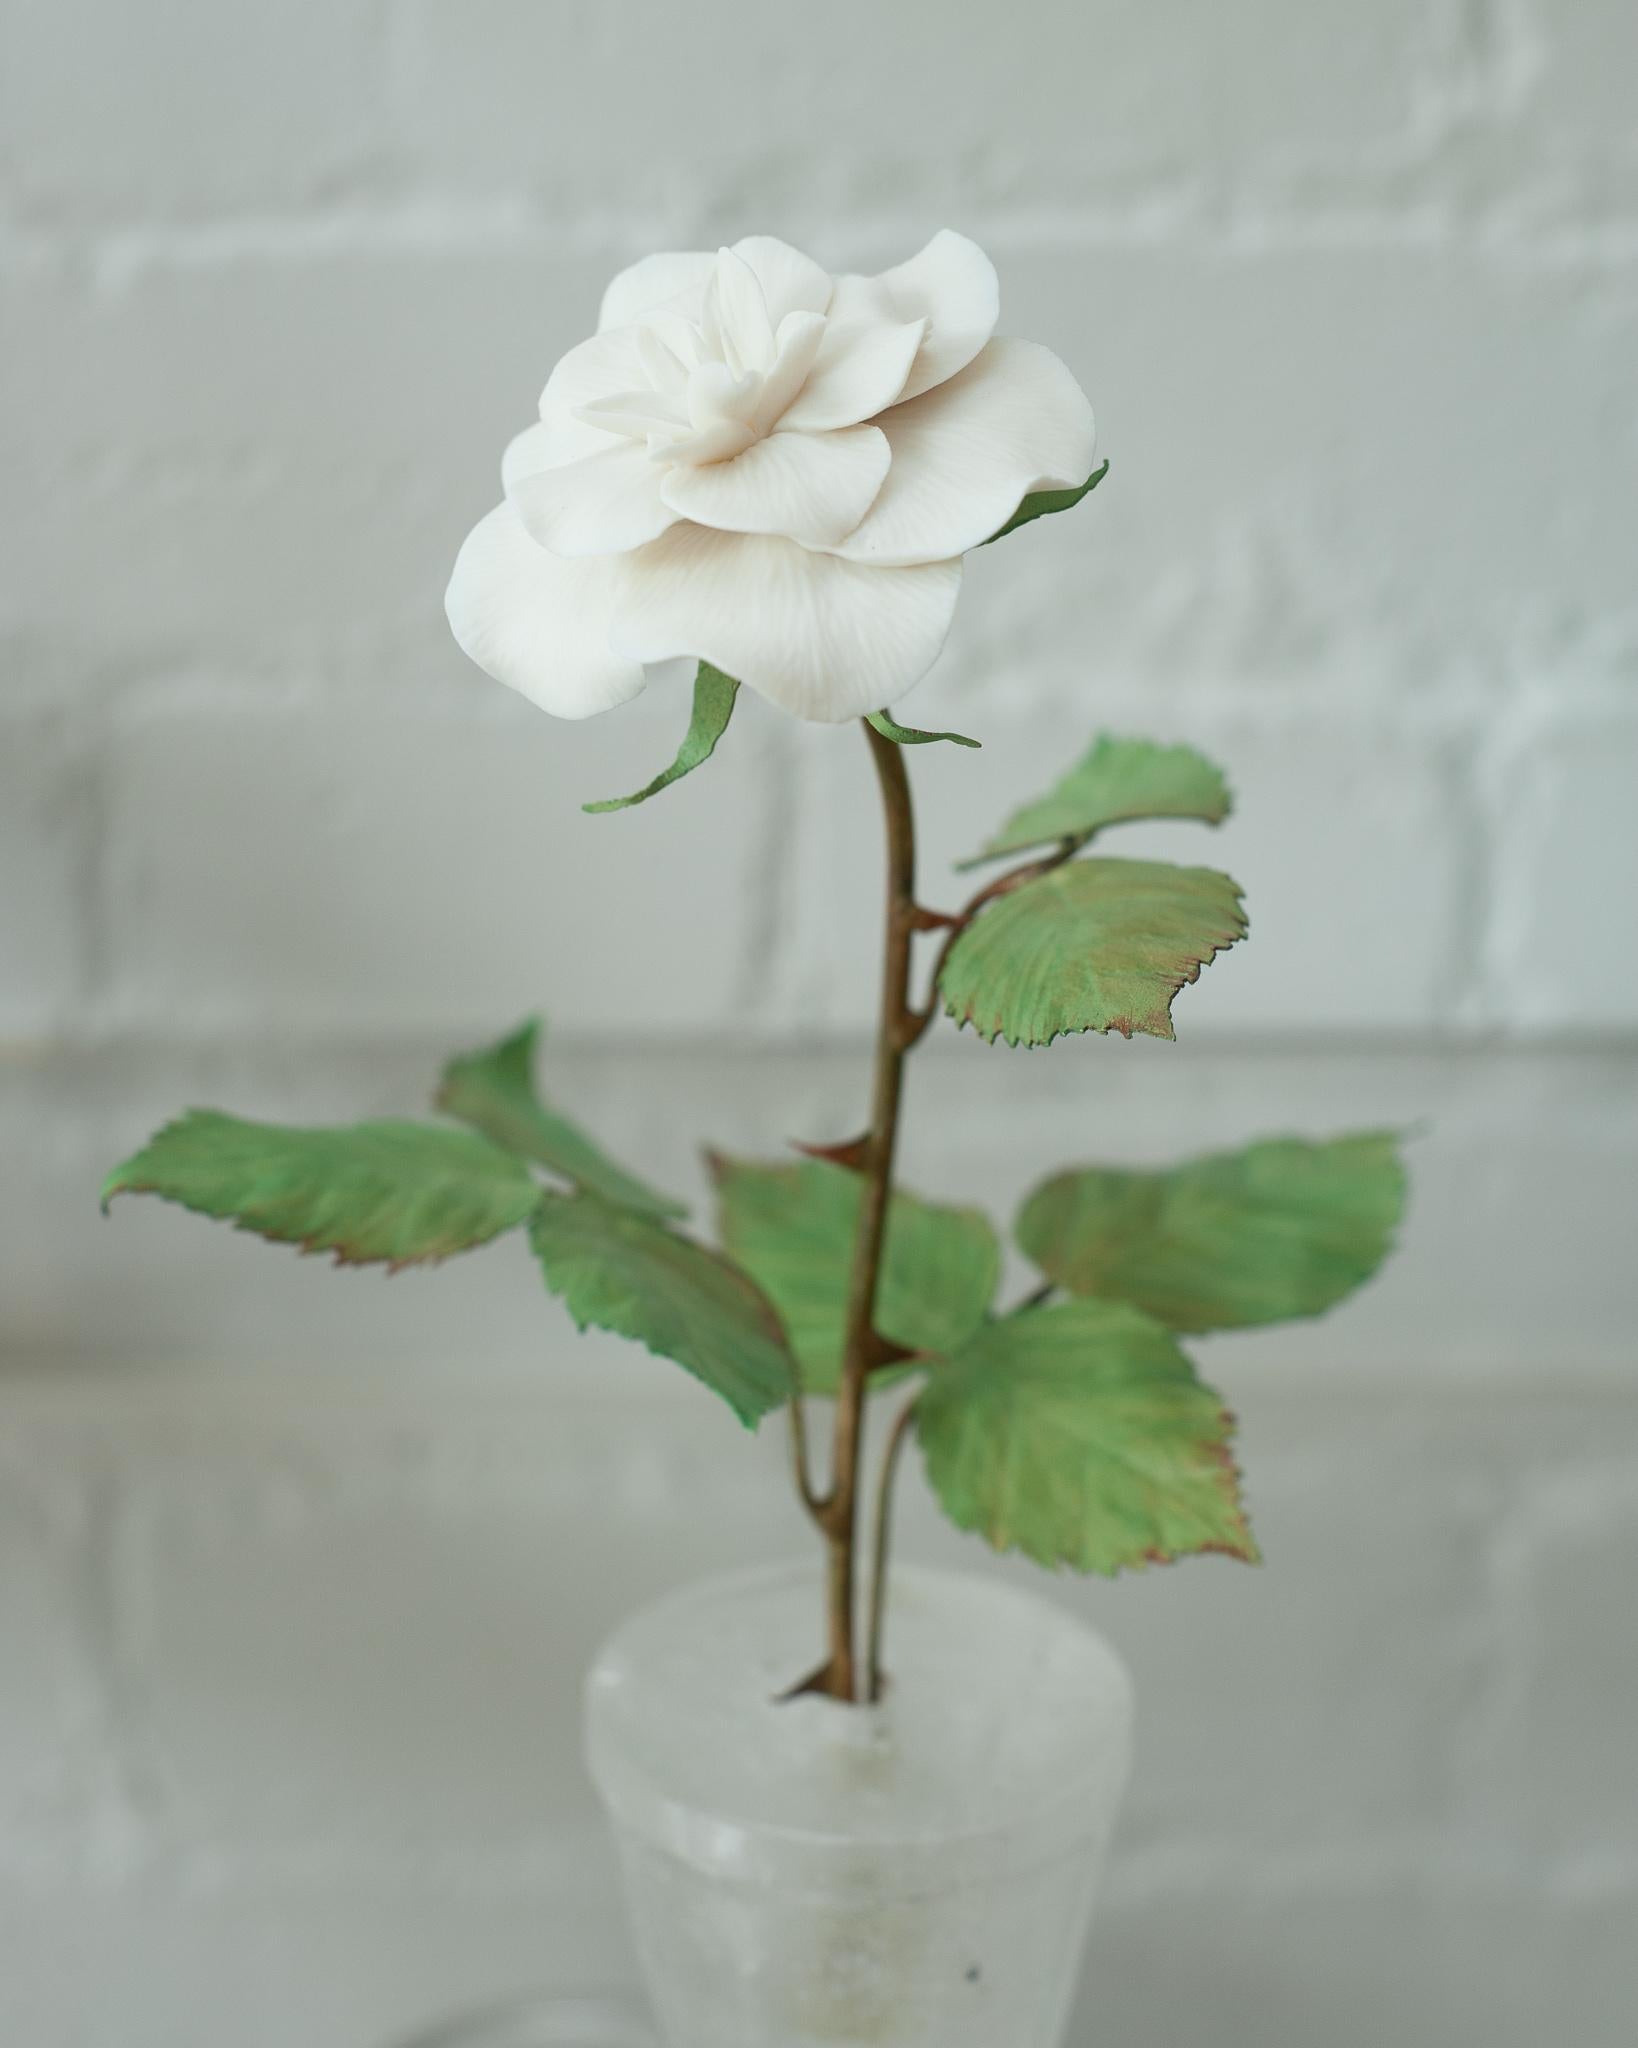 Verschönern Sie Ihren Tisch mit diesen zarten Porzellanblumen des französischen Künstlers Samuel Mazy. Dieser Rosenstrauch ist handgefertigt aus Biskuitporzellan mit bemalten Kupferblättern und -stängeln und steht in einem Bergkristalltopf. Eine